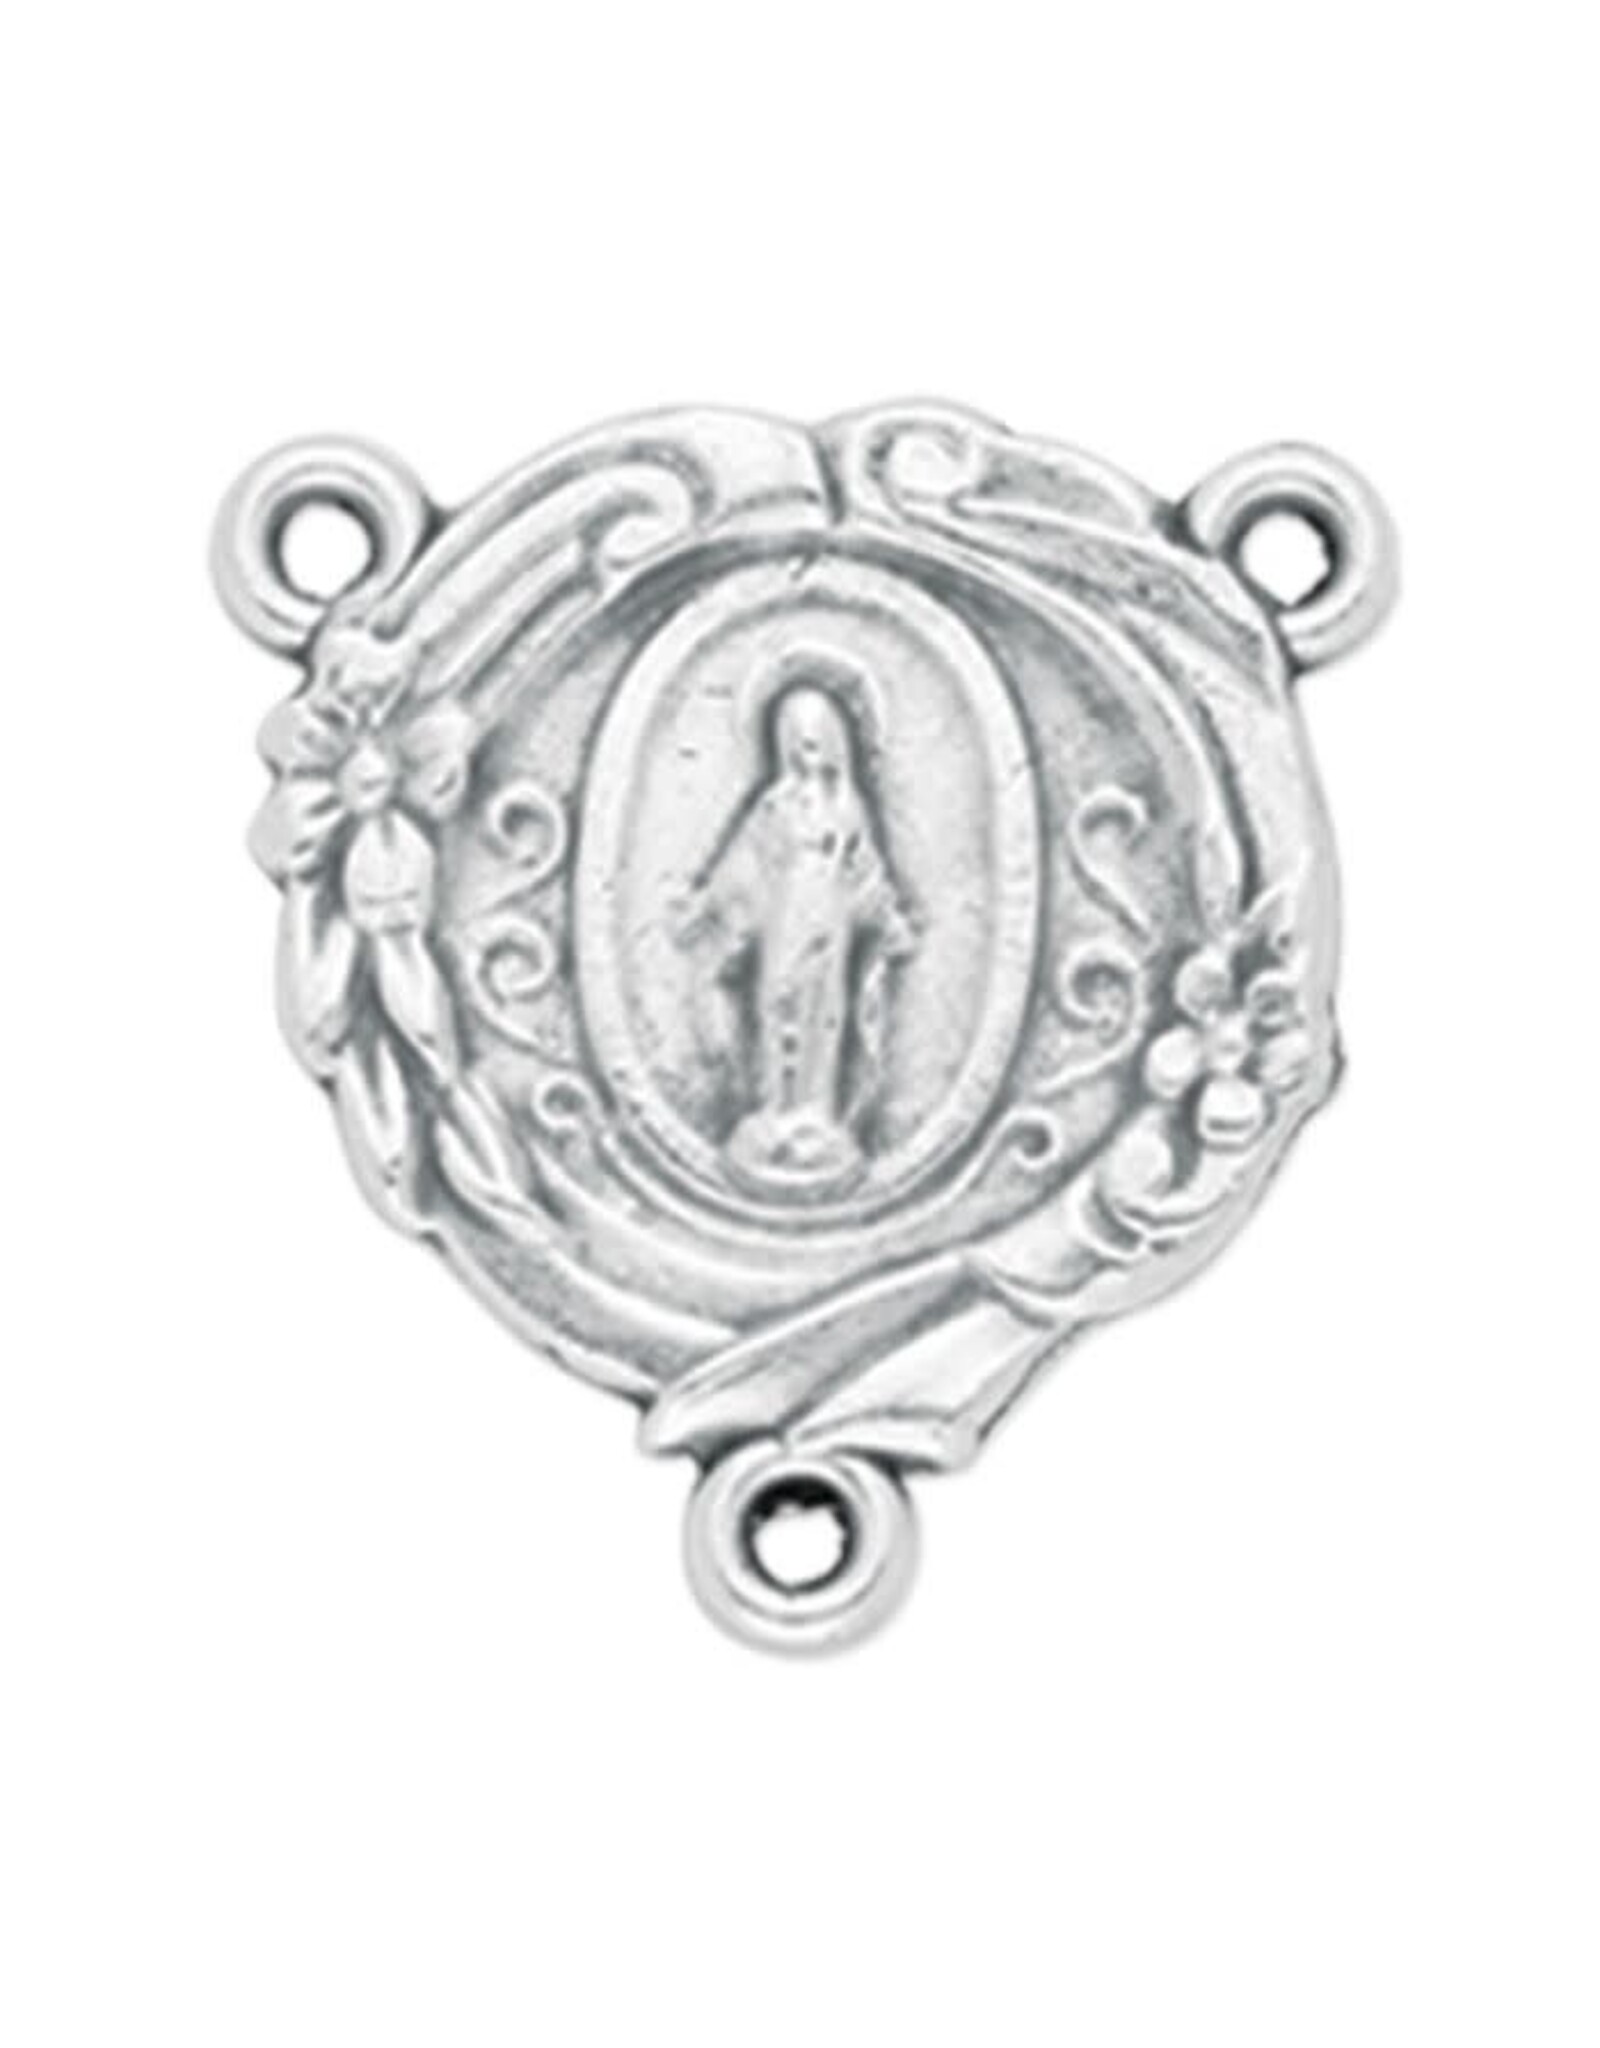 Hirten Rosary Centerpiece - Miraculous Medal, Flowered